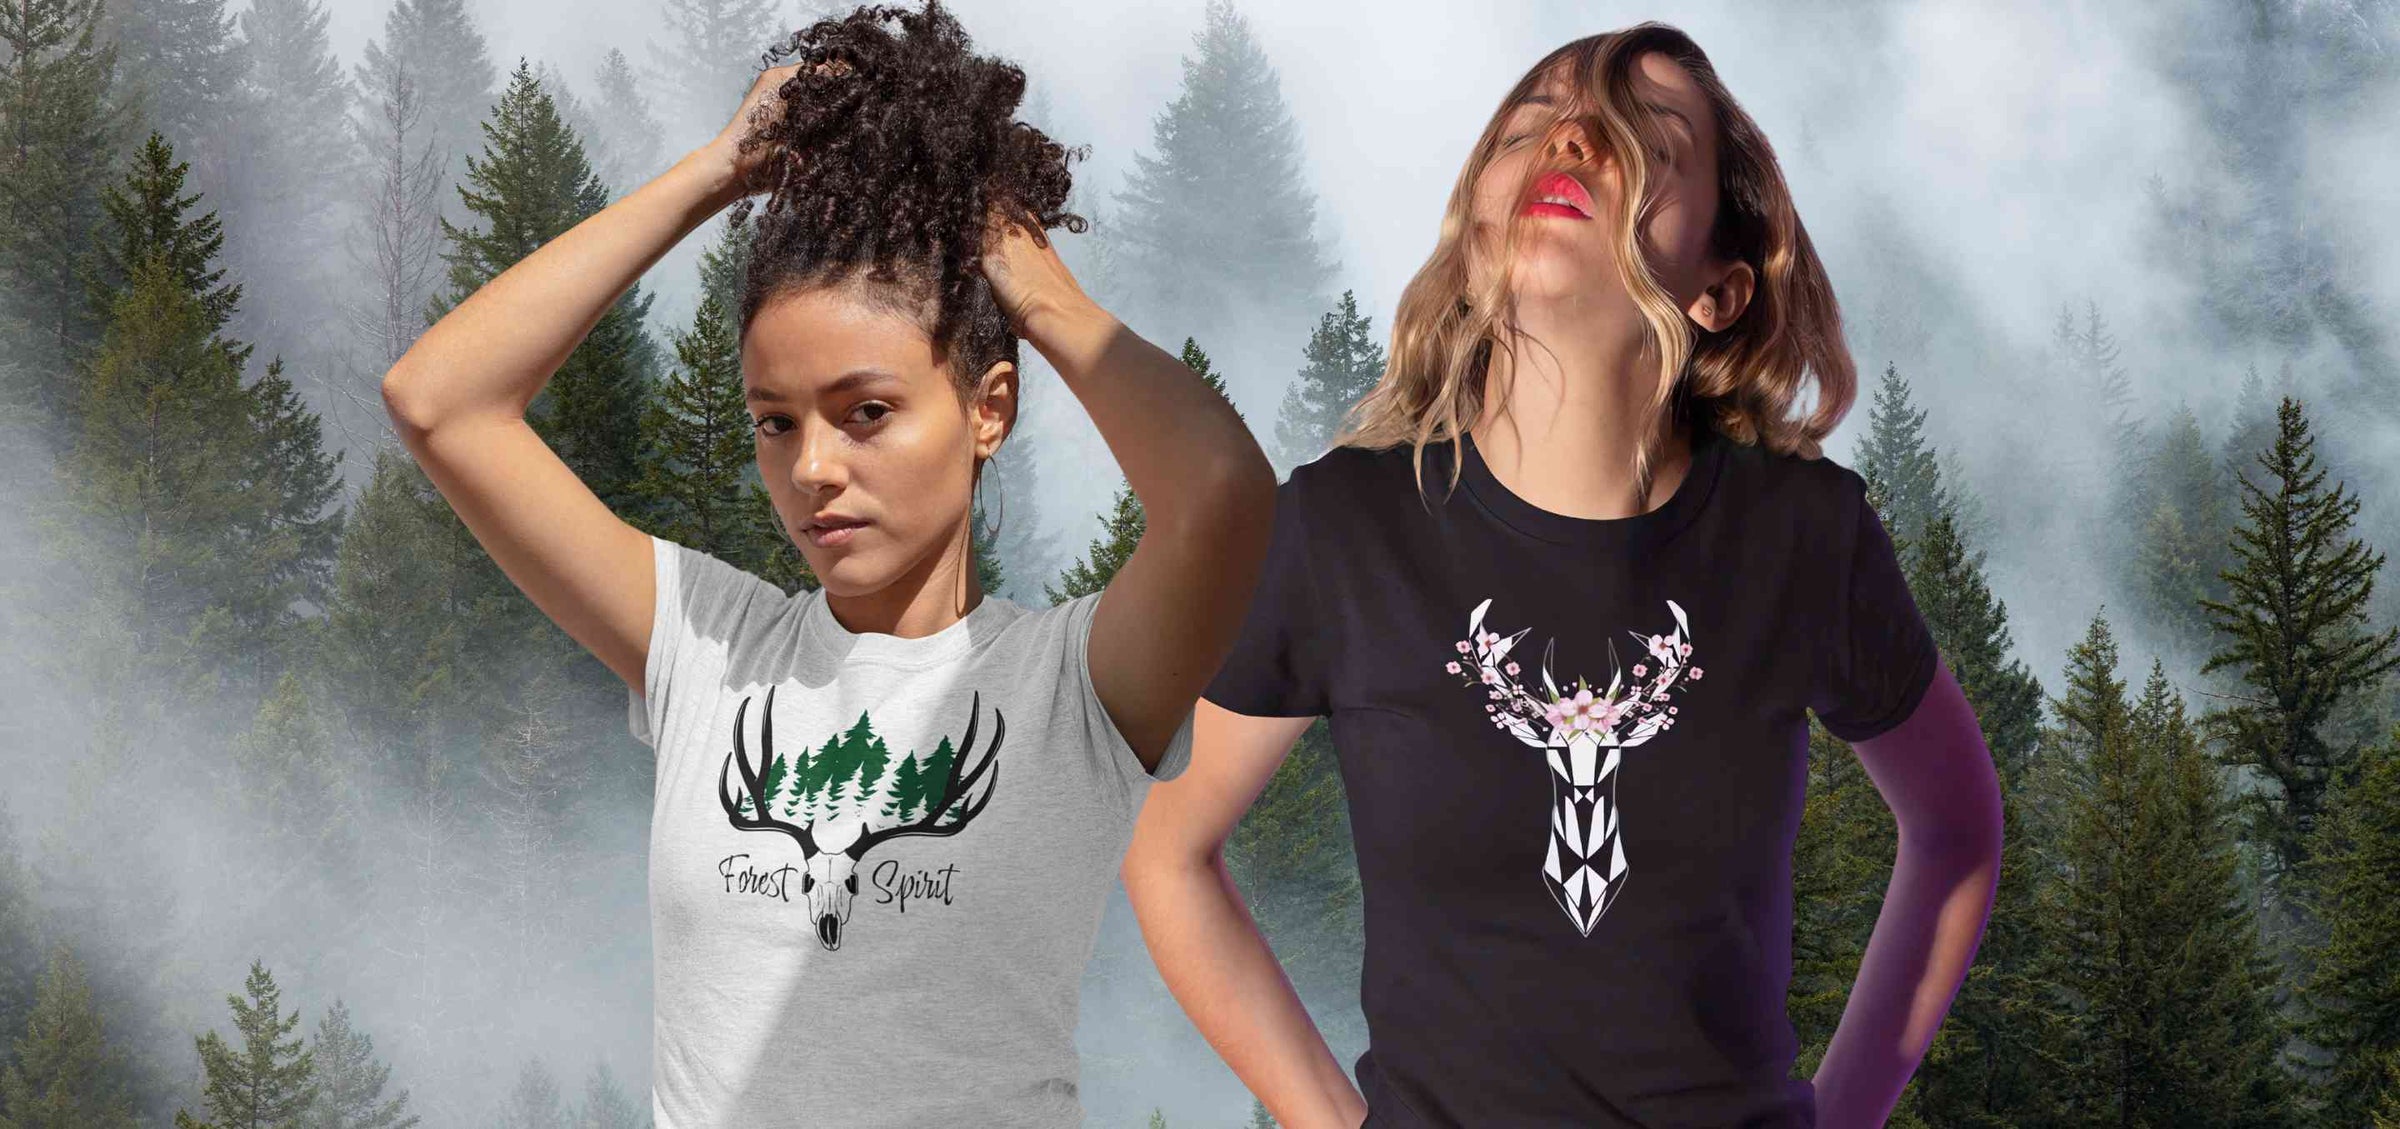 Auswahl von Damen T-Shirts aus der Runental Kollektion, mit Designs inspiriert von Mythologie und Fantasy.